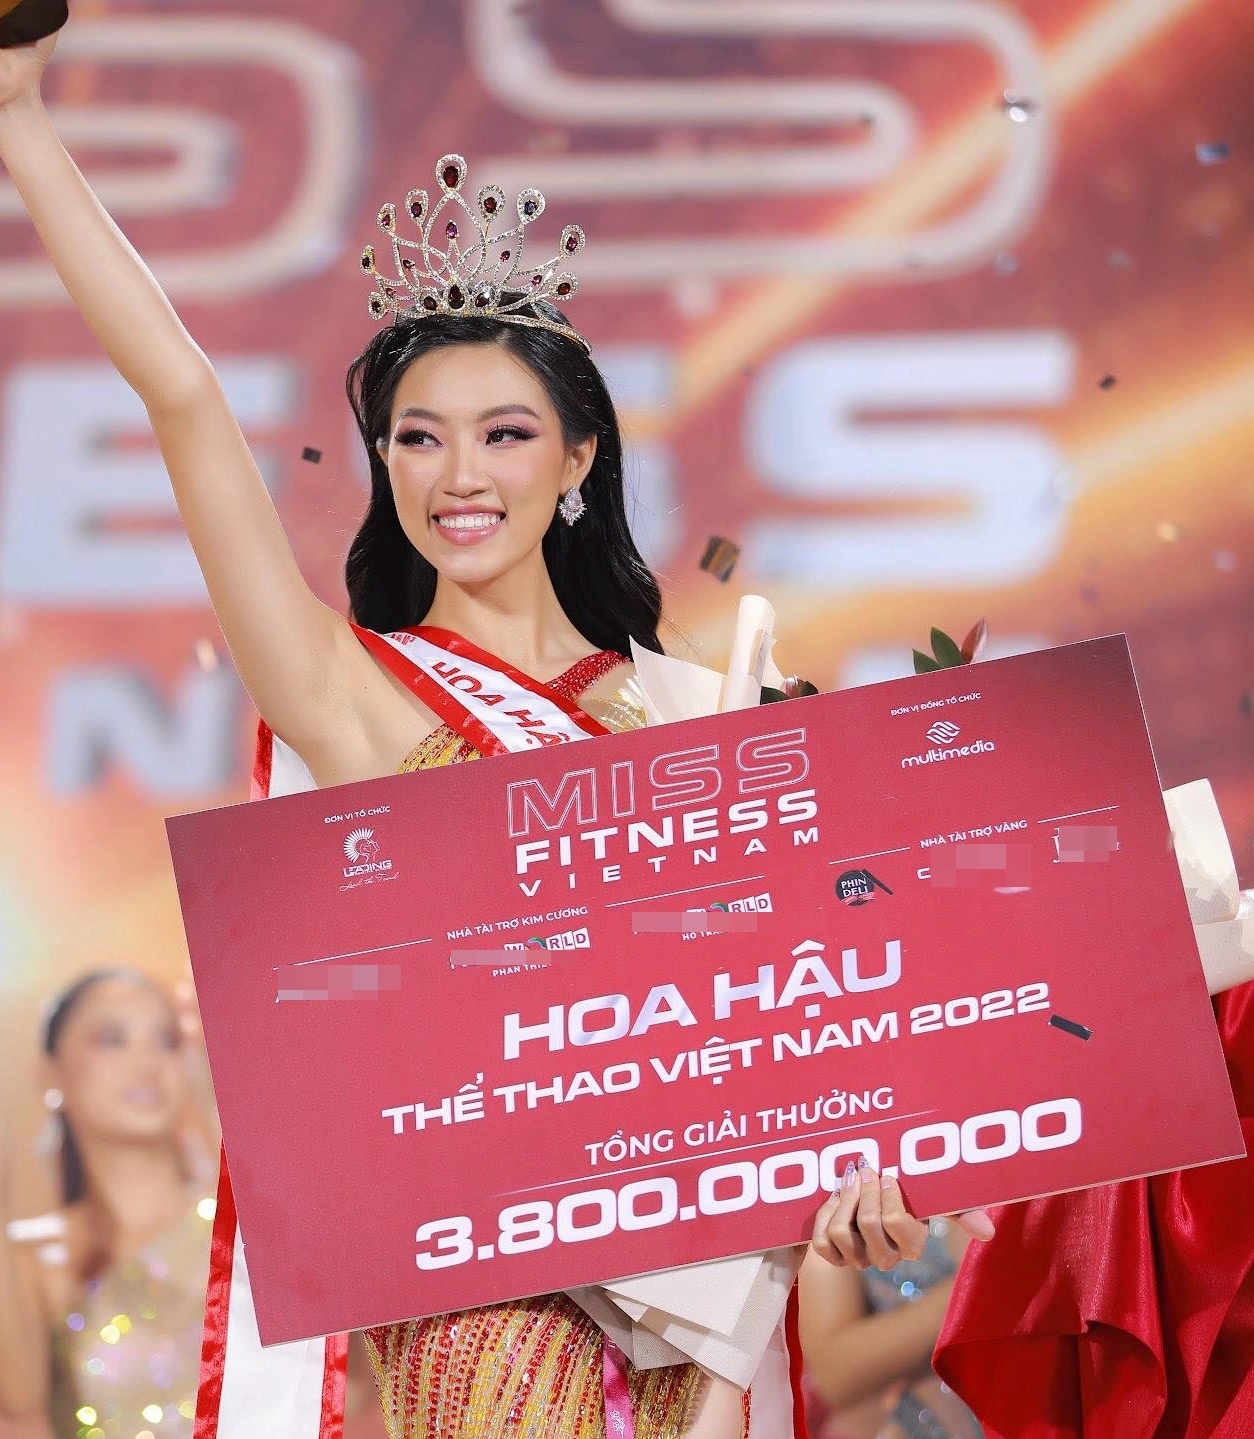 Hoa hậu Thể thao 2022 Đoàn Thu Thủy trong giây phút đăng quang